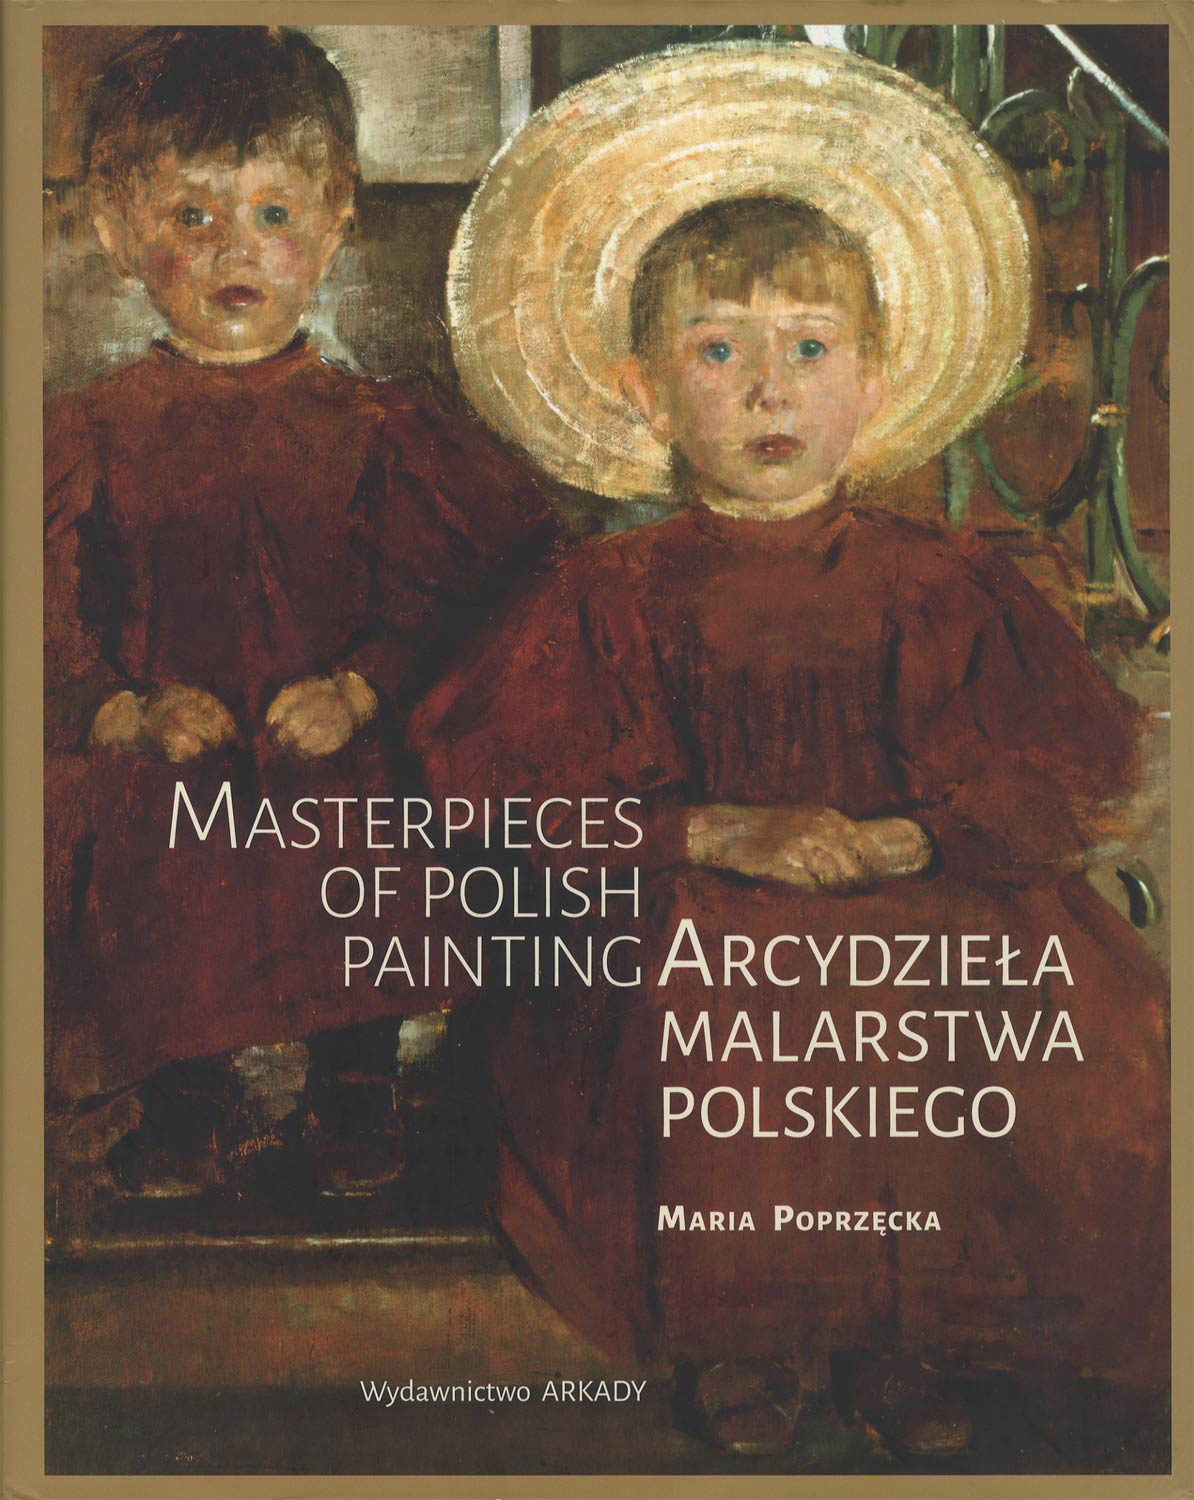 Arcydzieła malarstwa polskiego　Masterpieces of Polish Painting